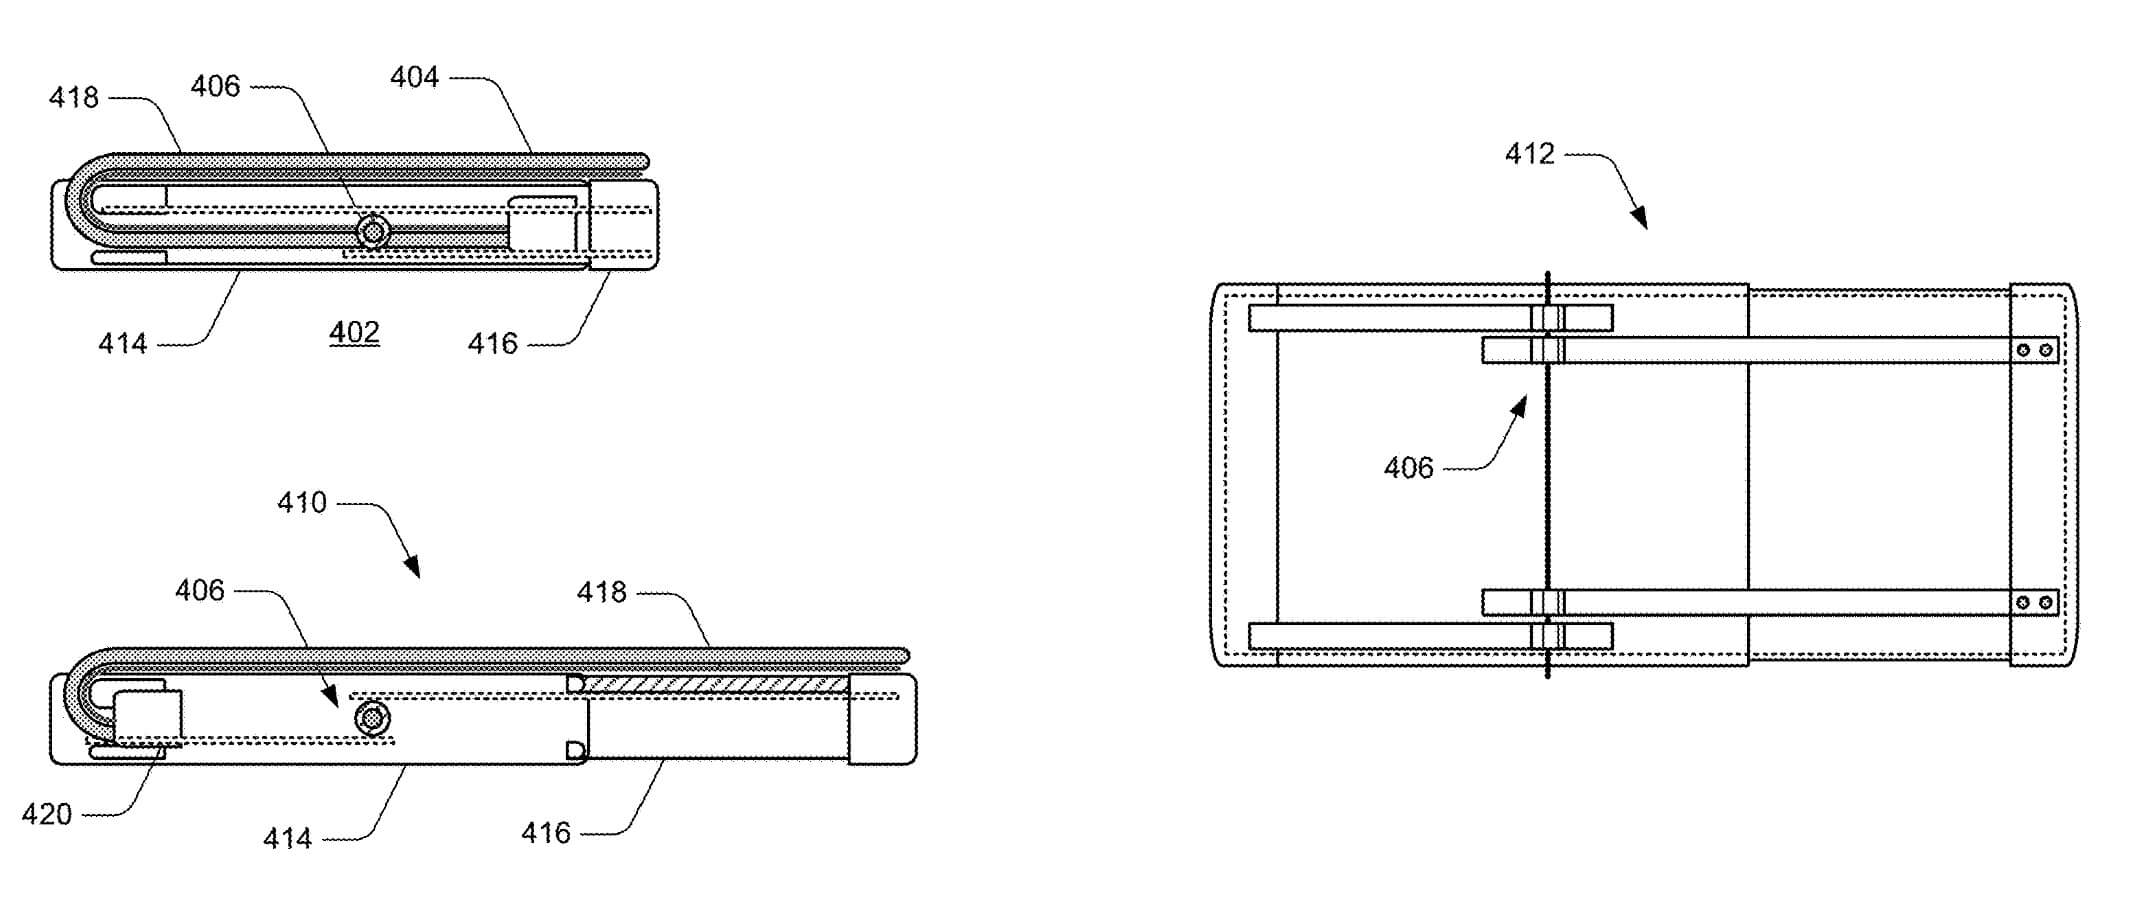 Microsoft patenta un dispositivo extensible con pantalla flexible